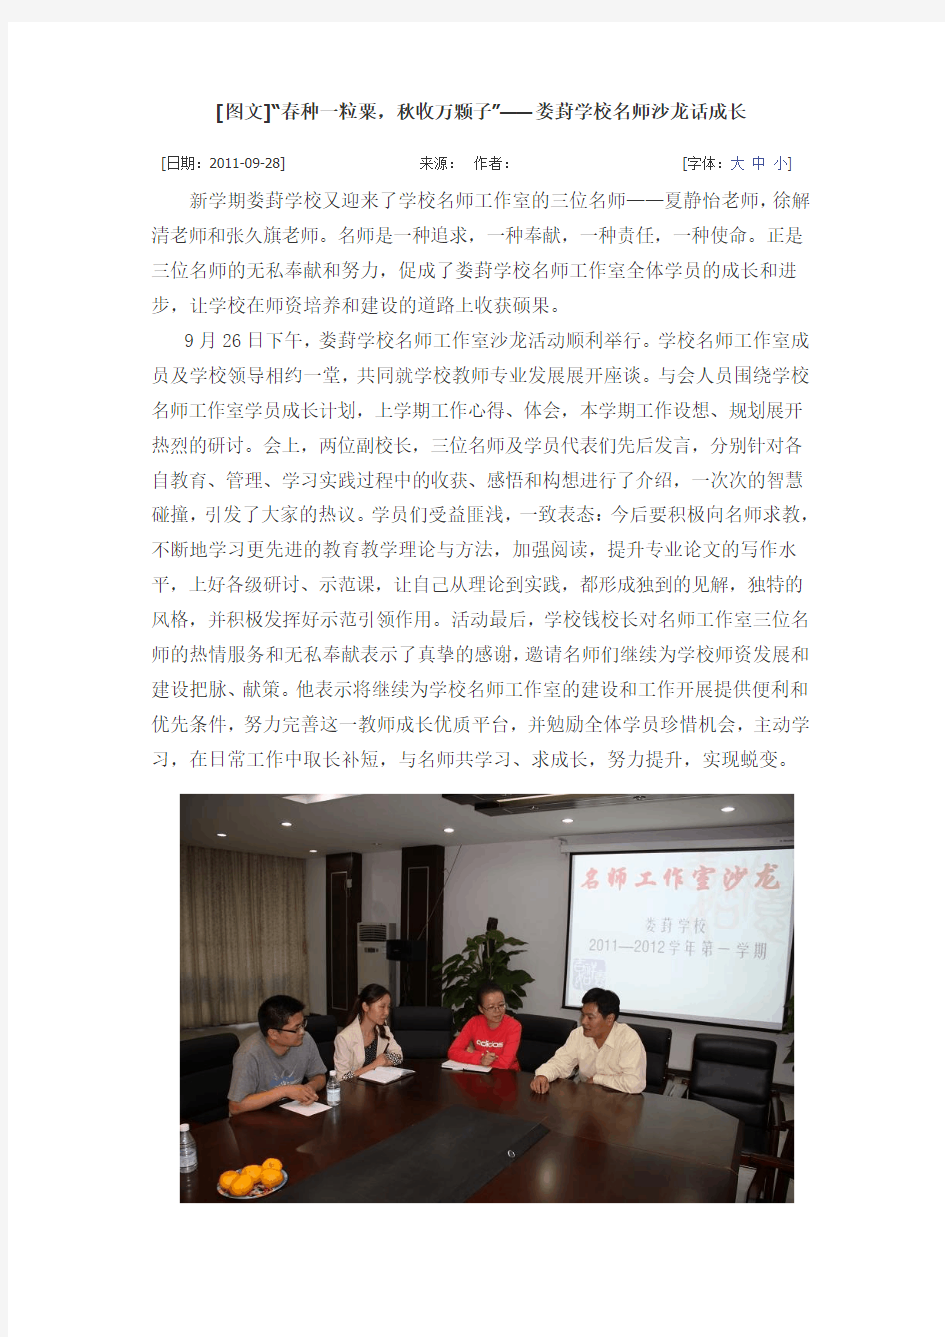 学校“苏州工业园区名师工作室导师”活动报道